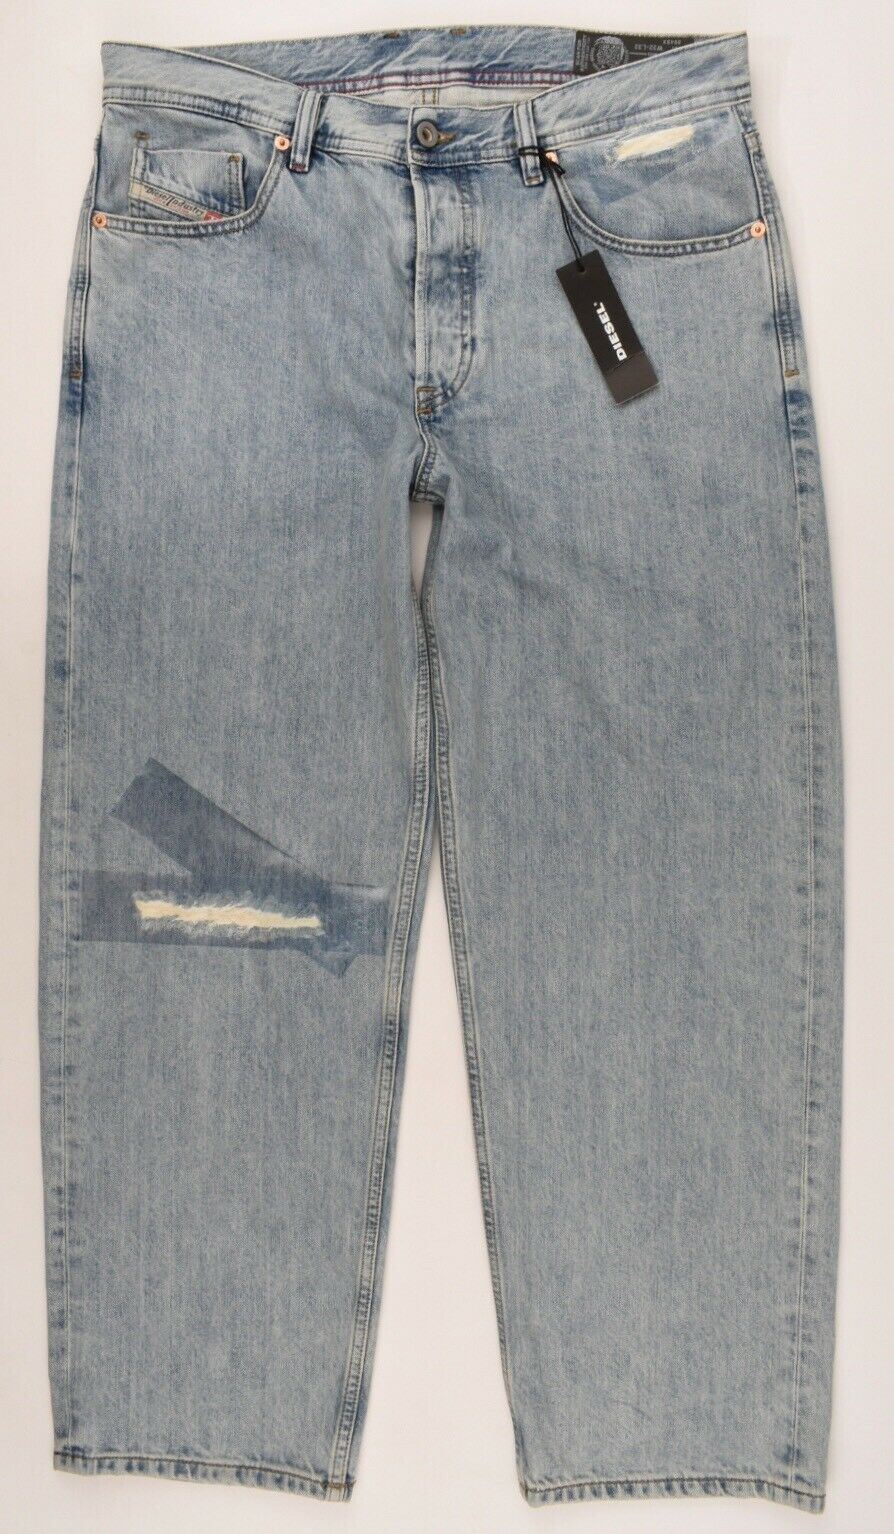 DIESEL Men's DAGH Cropped Jeans, Regular Straight Leg, Light Blue, W30 W31 W32